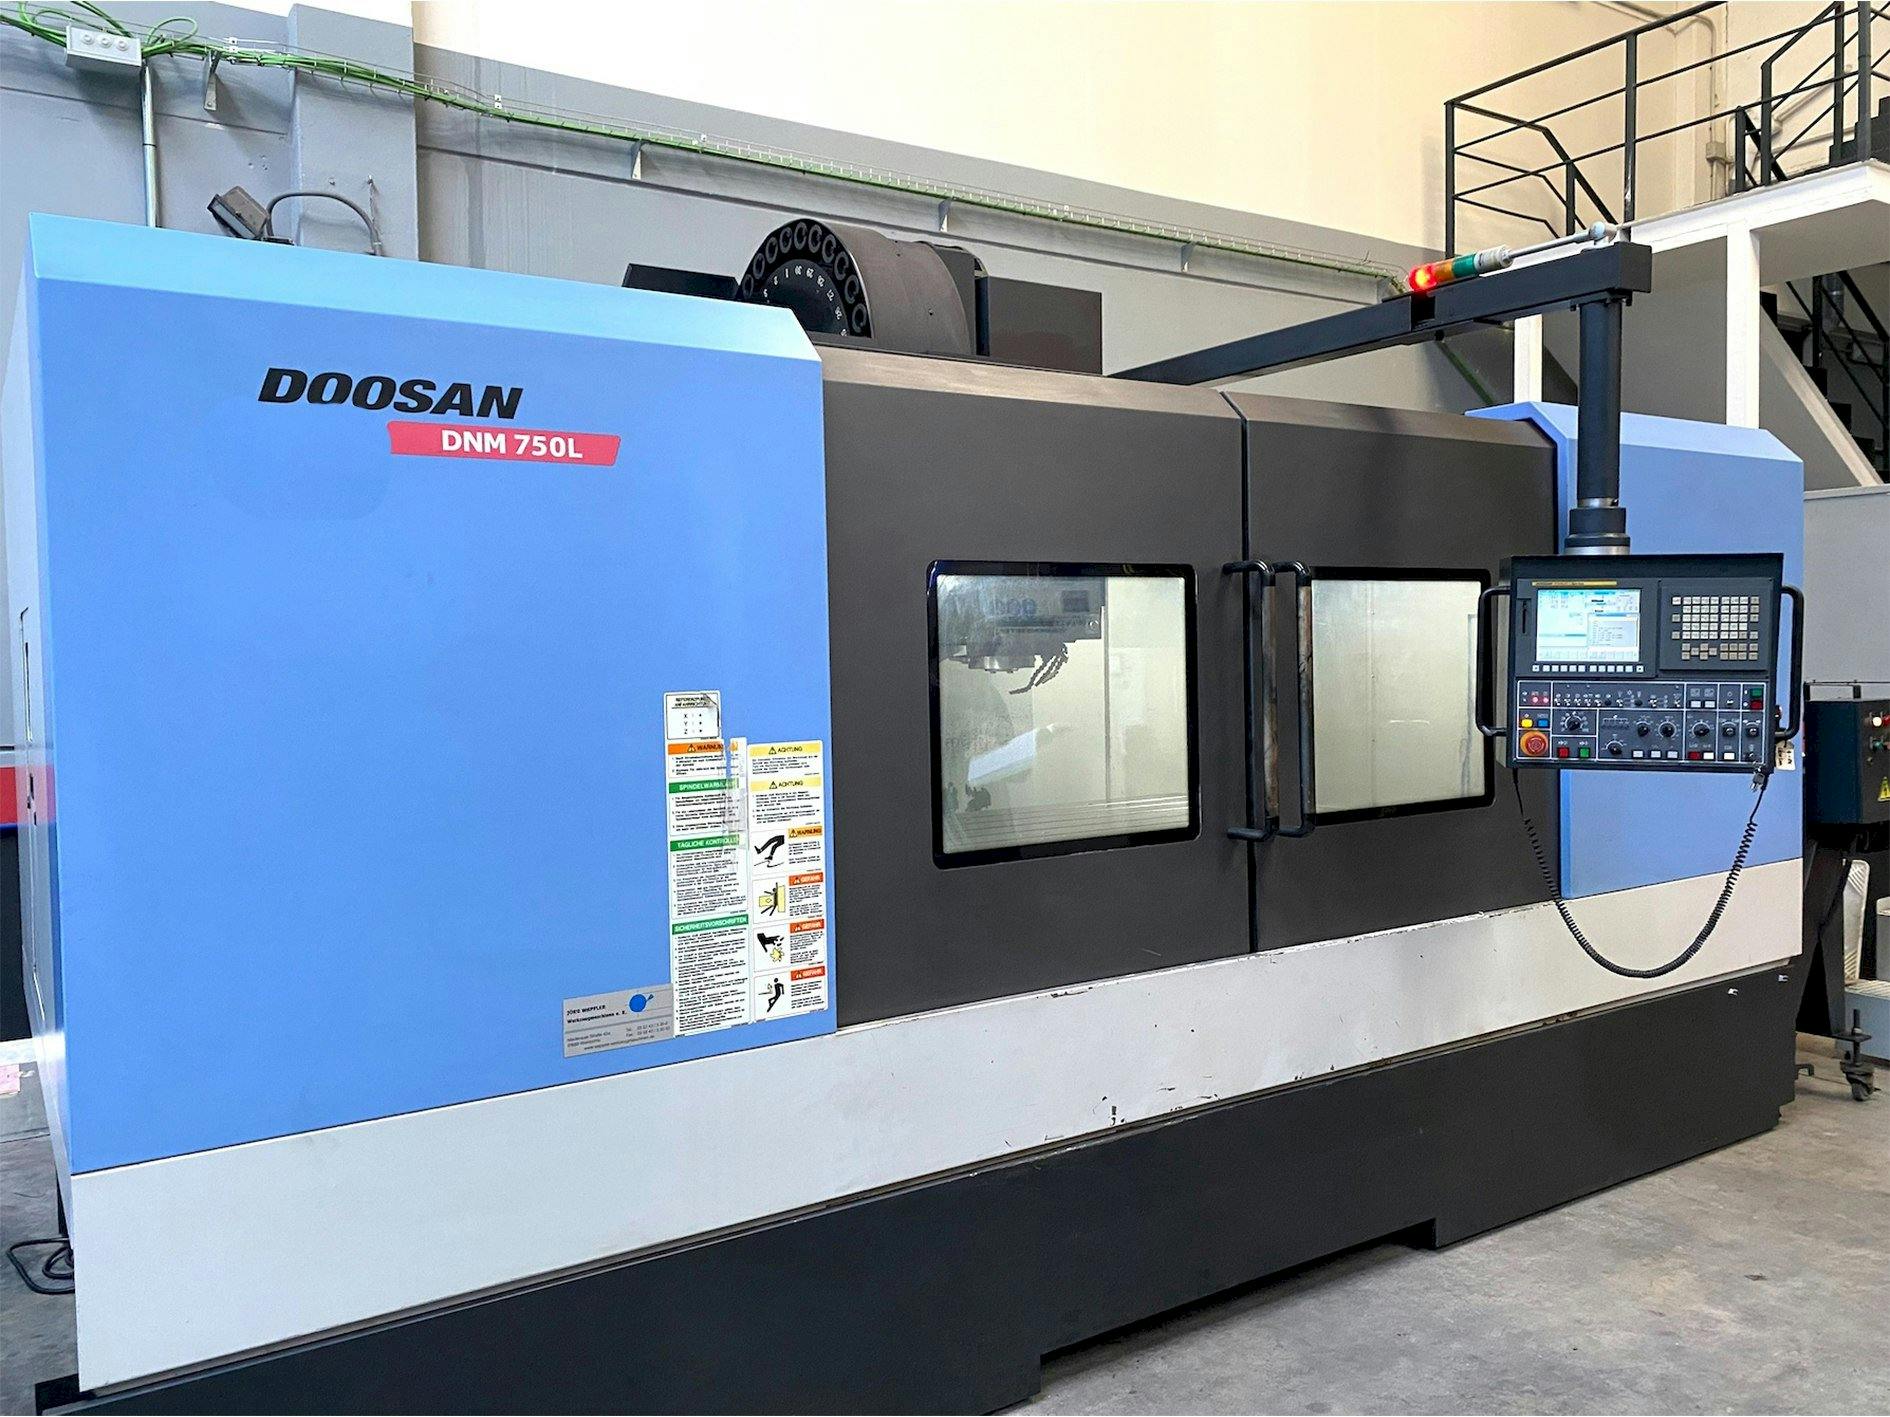 Vista frontal de la máquina Doosan DNM705L